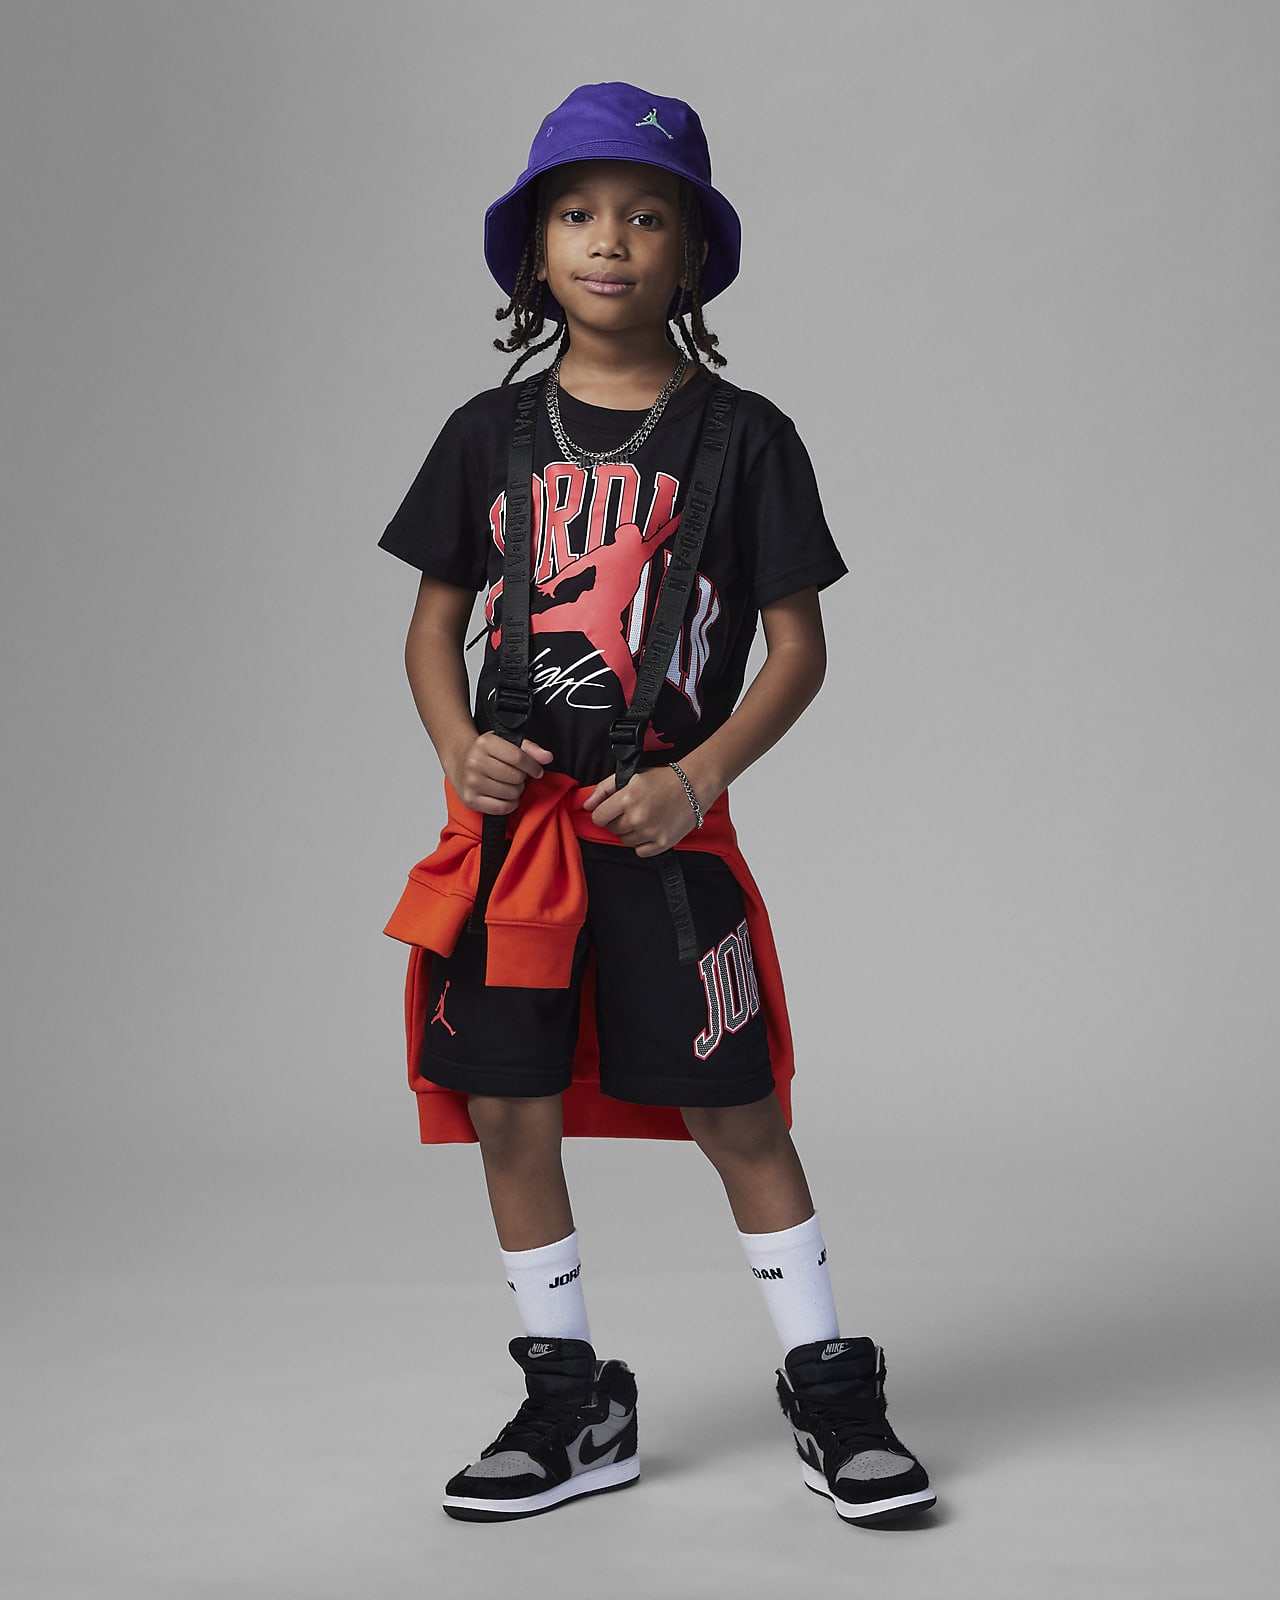 vistazo Pobreza extrema guirnalda Jordan Home and Away Shorts Set Conjunto de dos piezas - Niño/a pequeño/a.  Nike ES